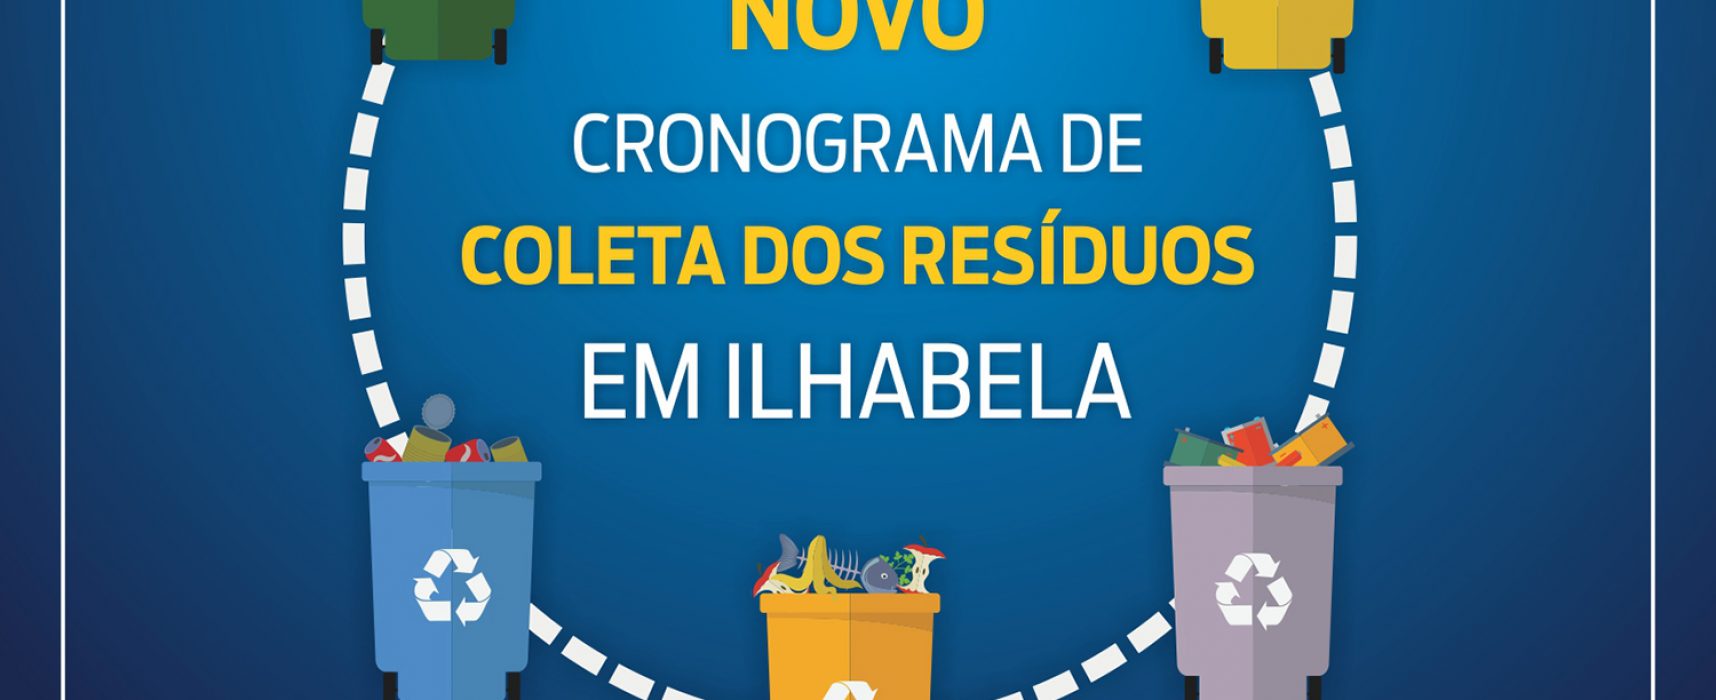 Novo cronograma de coleta dos resíduos é divulgado pela Prefeitura de Ilhabela